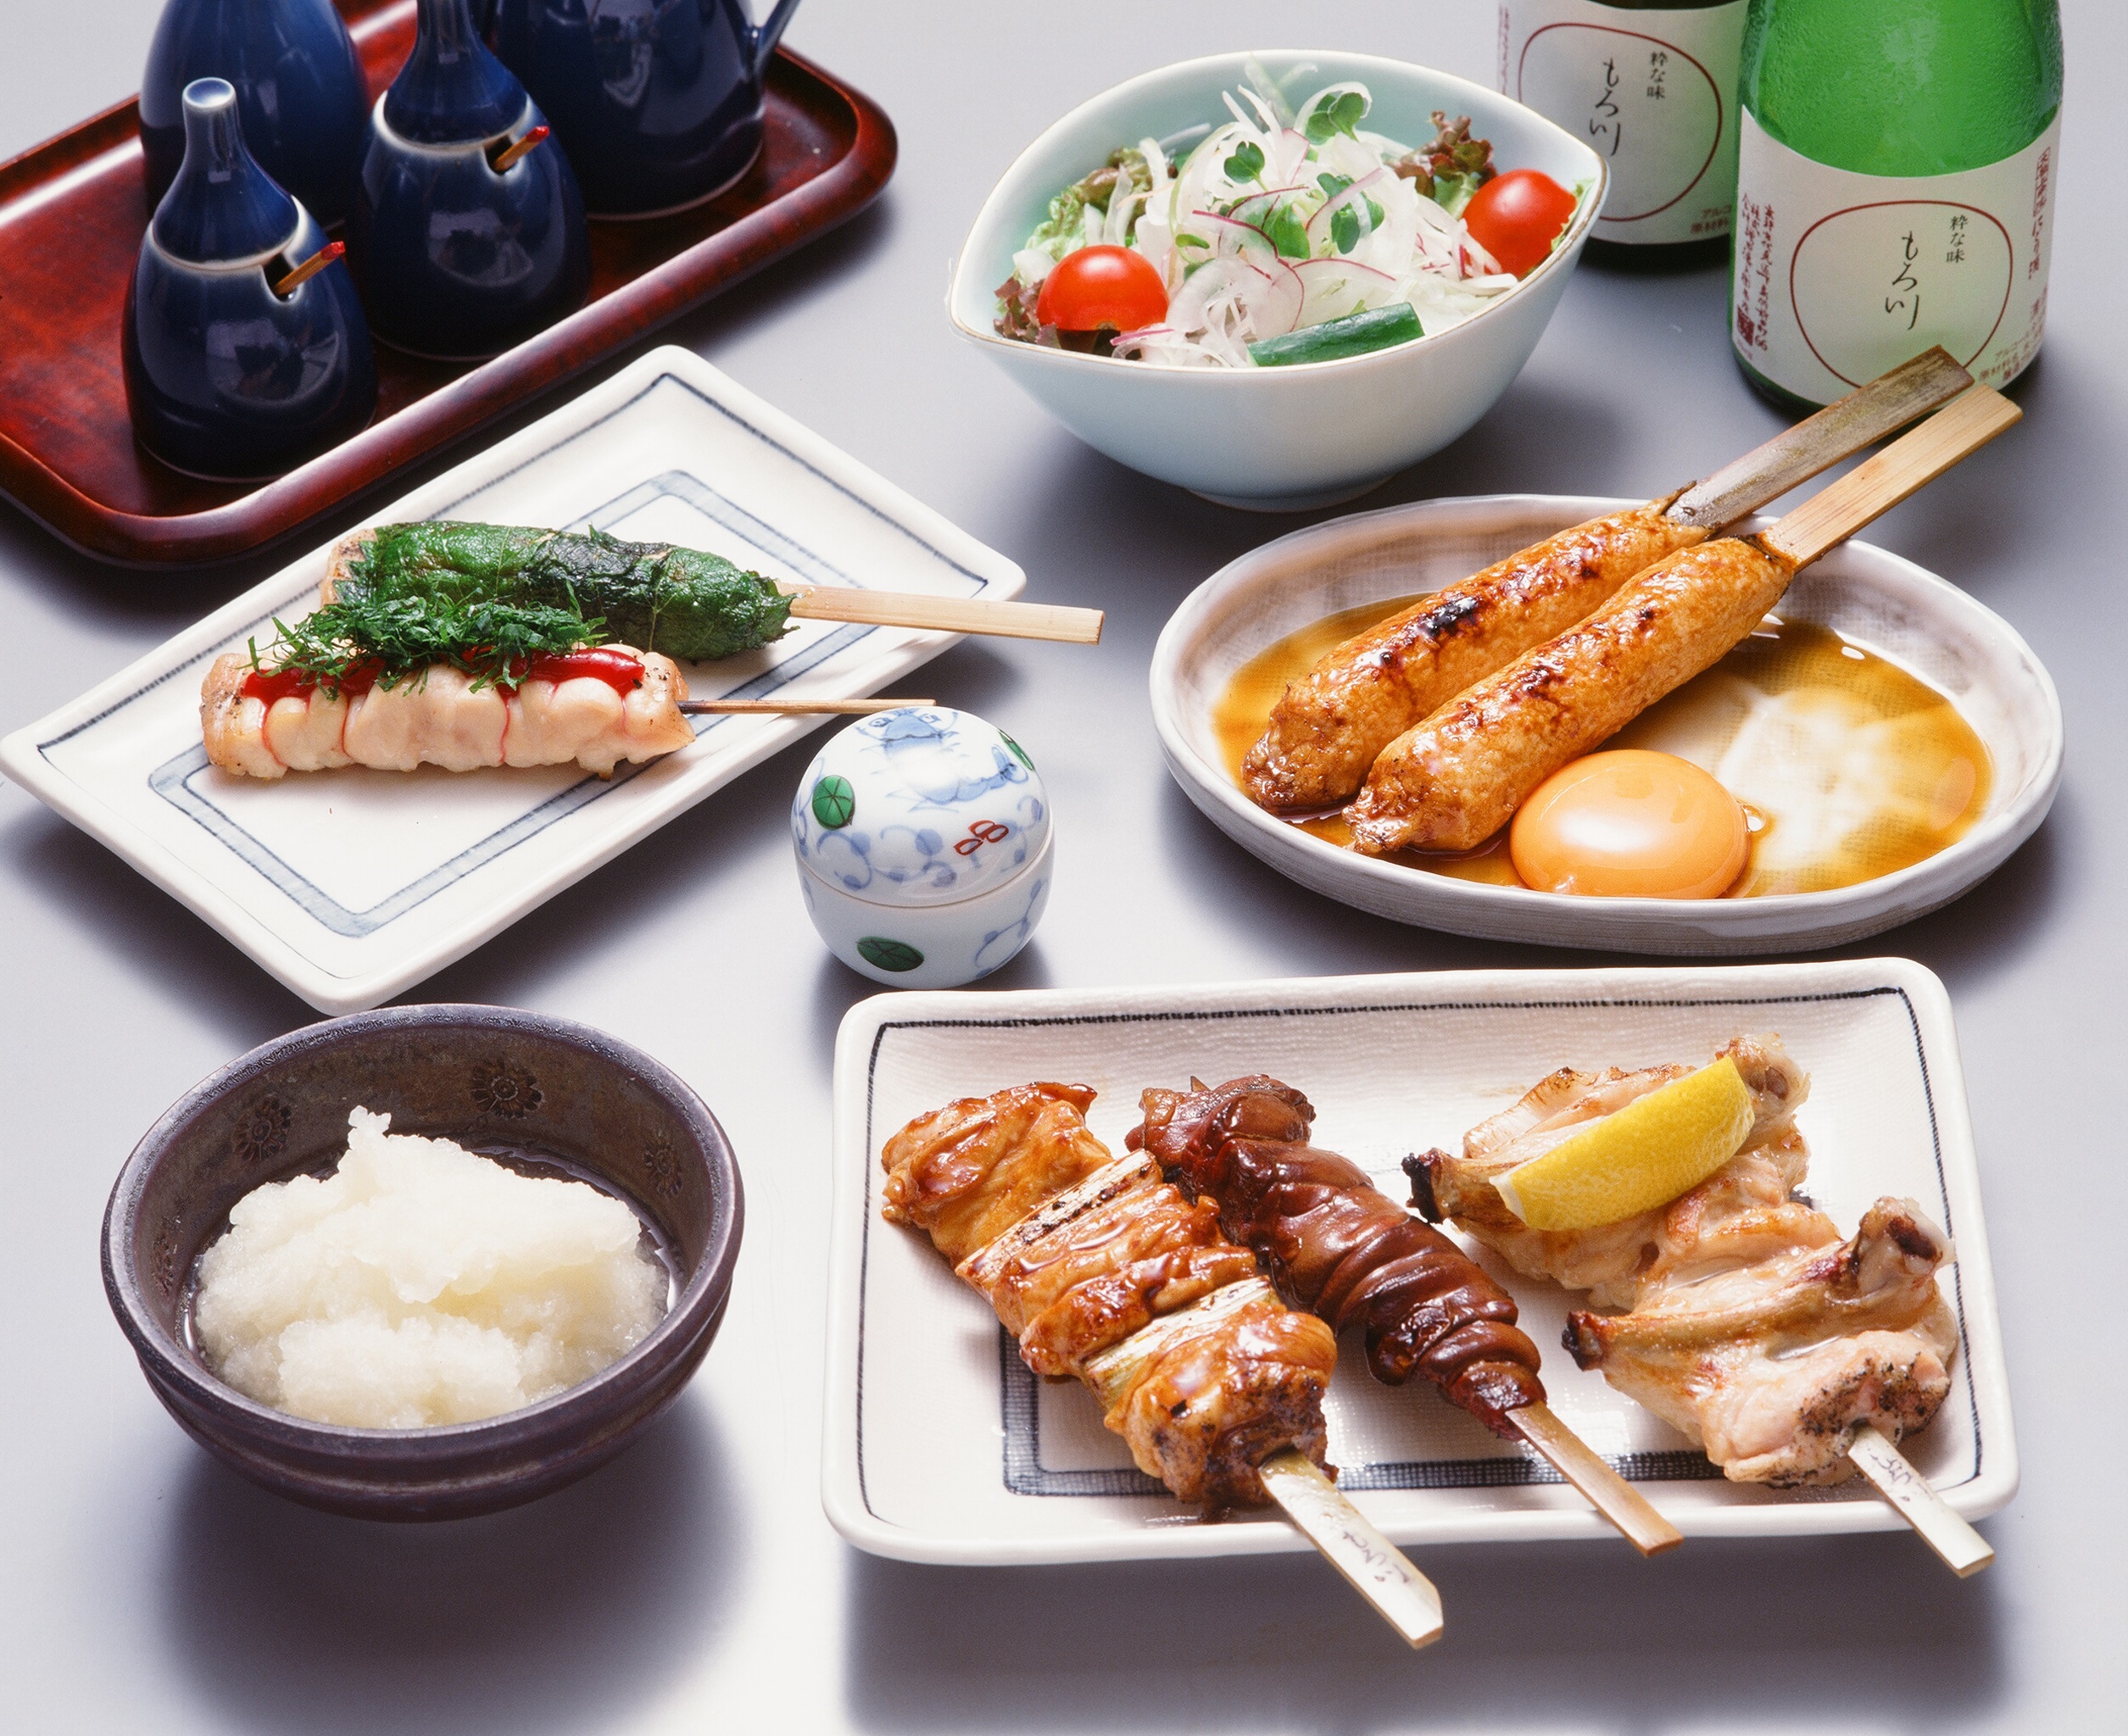 素材、味、趣きすべてにこだわった本格焼き鳥、京風おでん、季節のお料理をご堪能下さいませ。